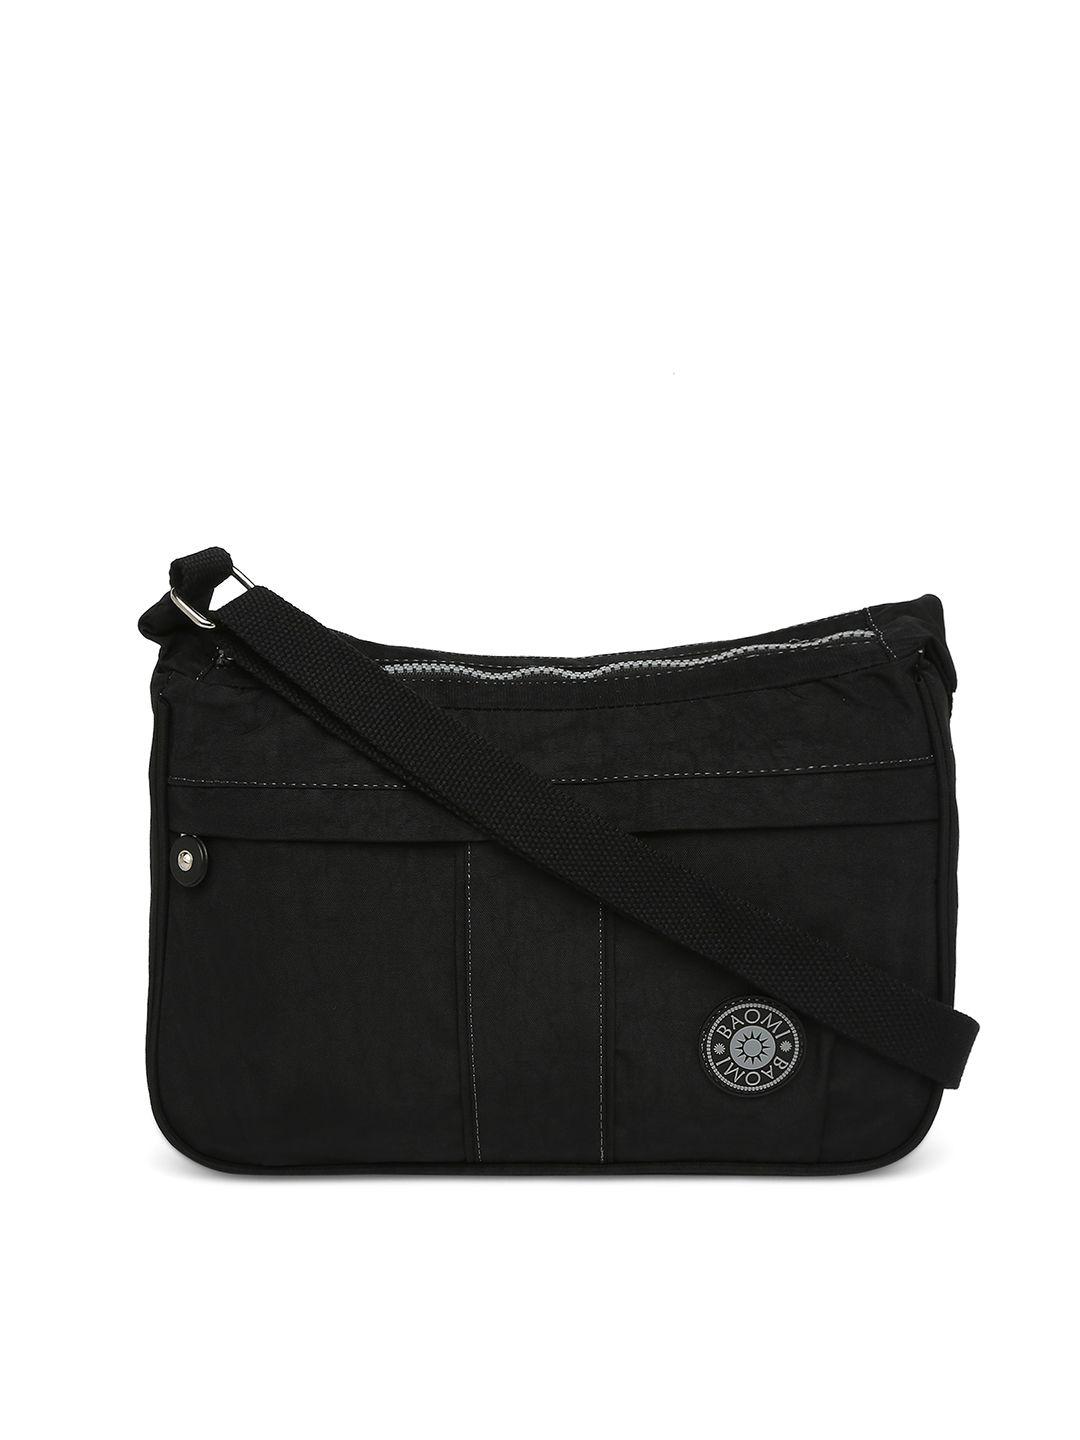 baomi black structured sling bag